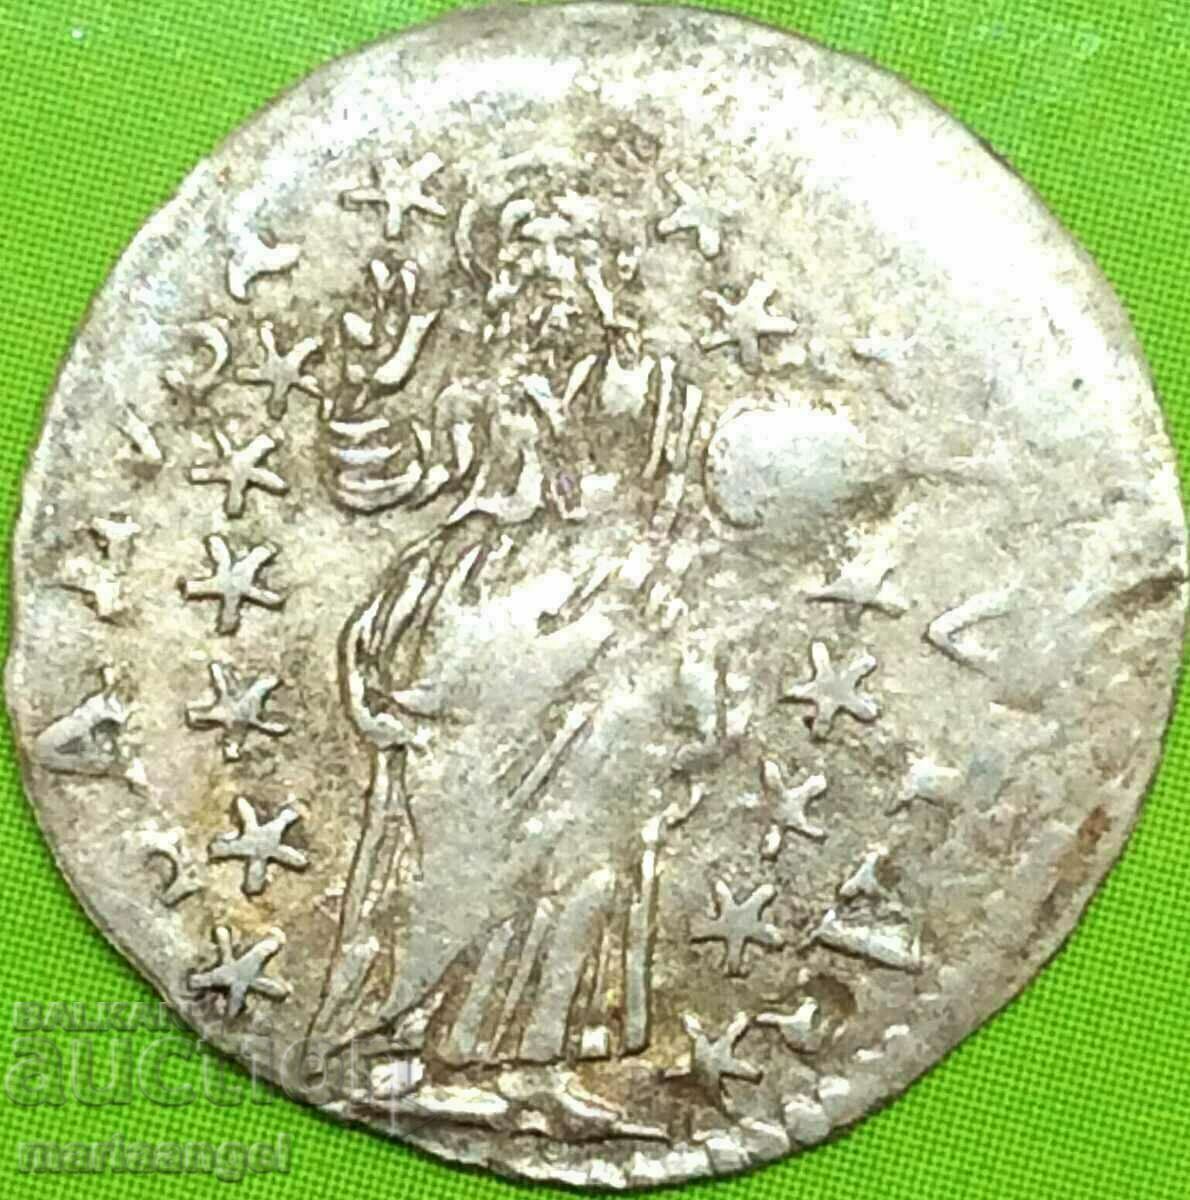 Republica Ragusa 1707 Grosseto Croația Dubrovnik argint